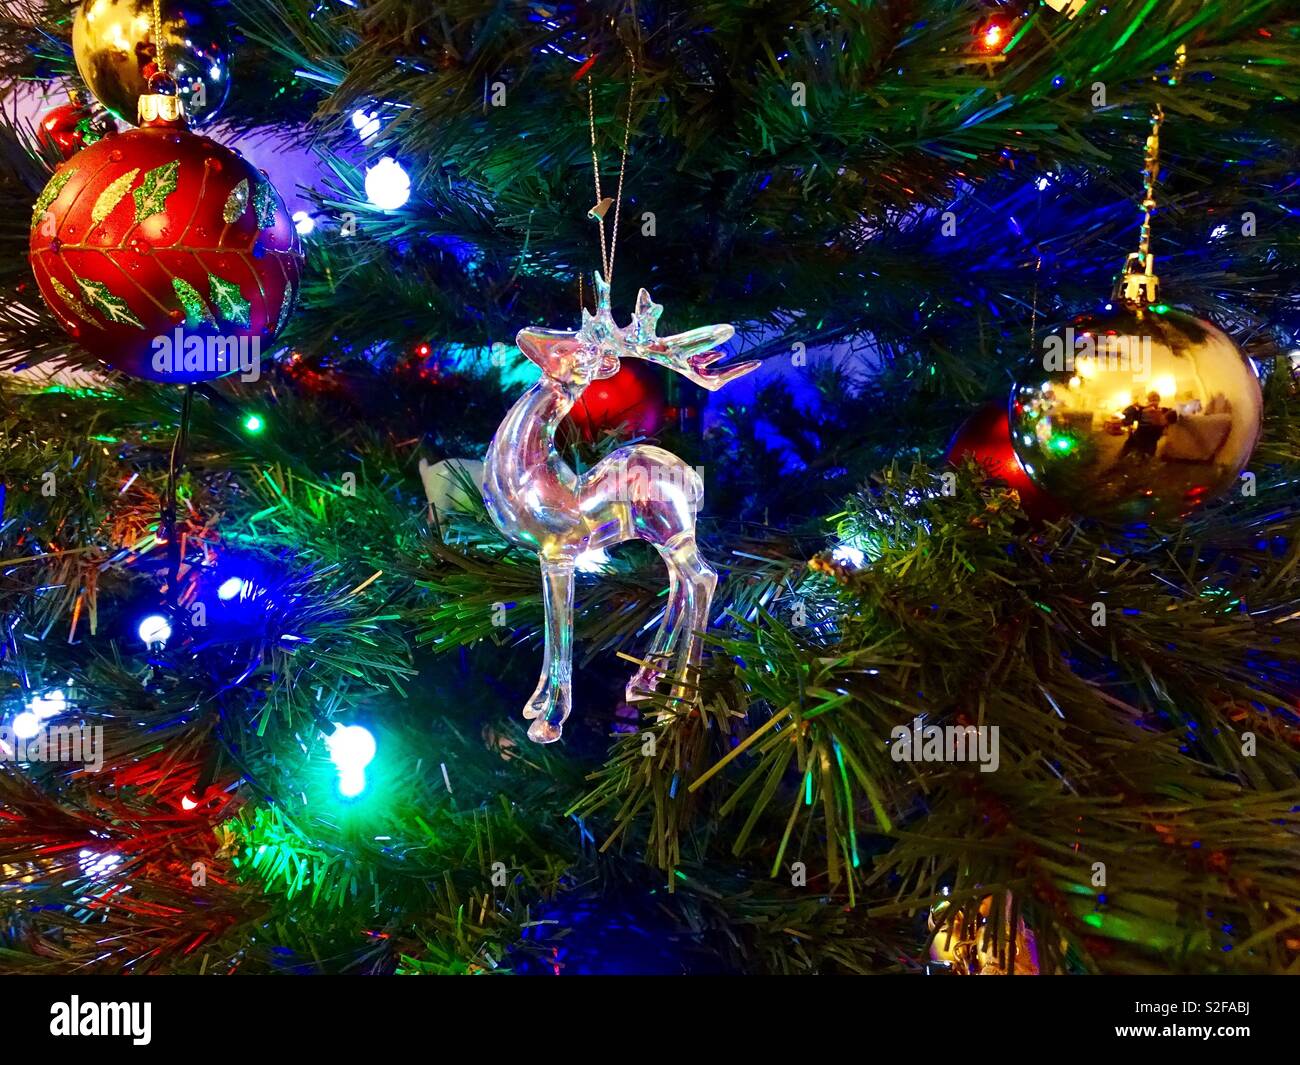 Reindeer Christmas ornament on Christmas tree Stock Photo